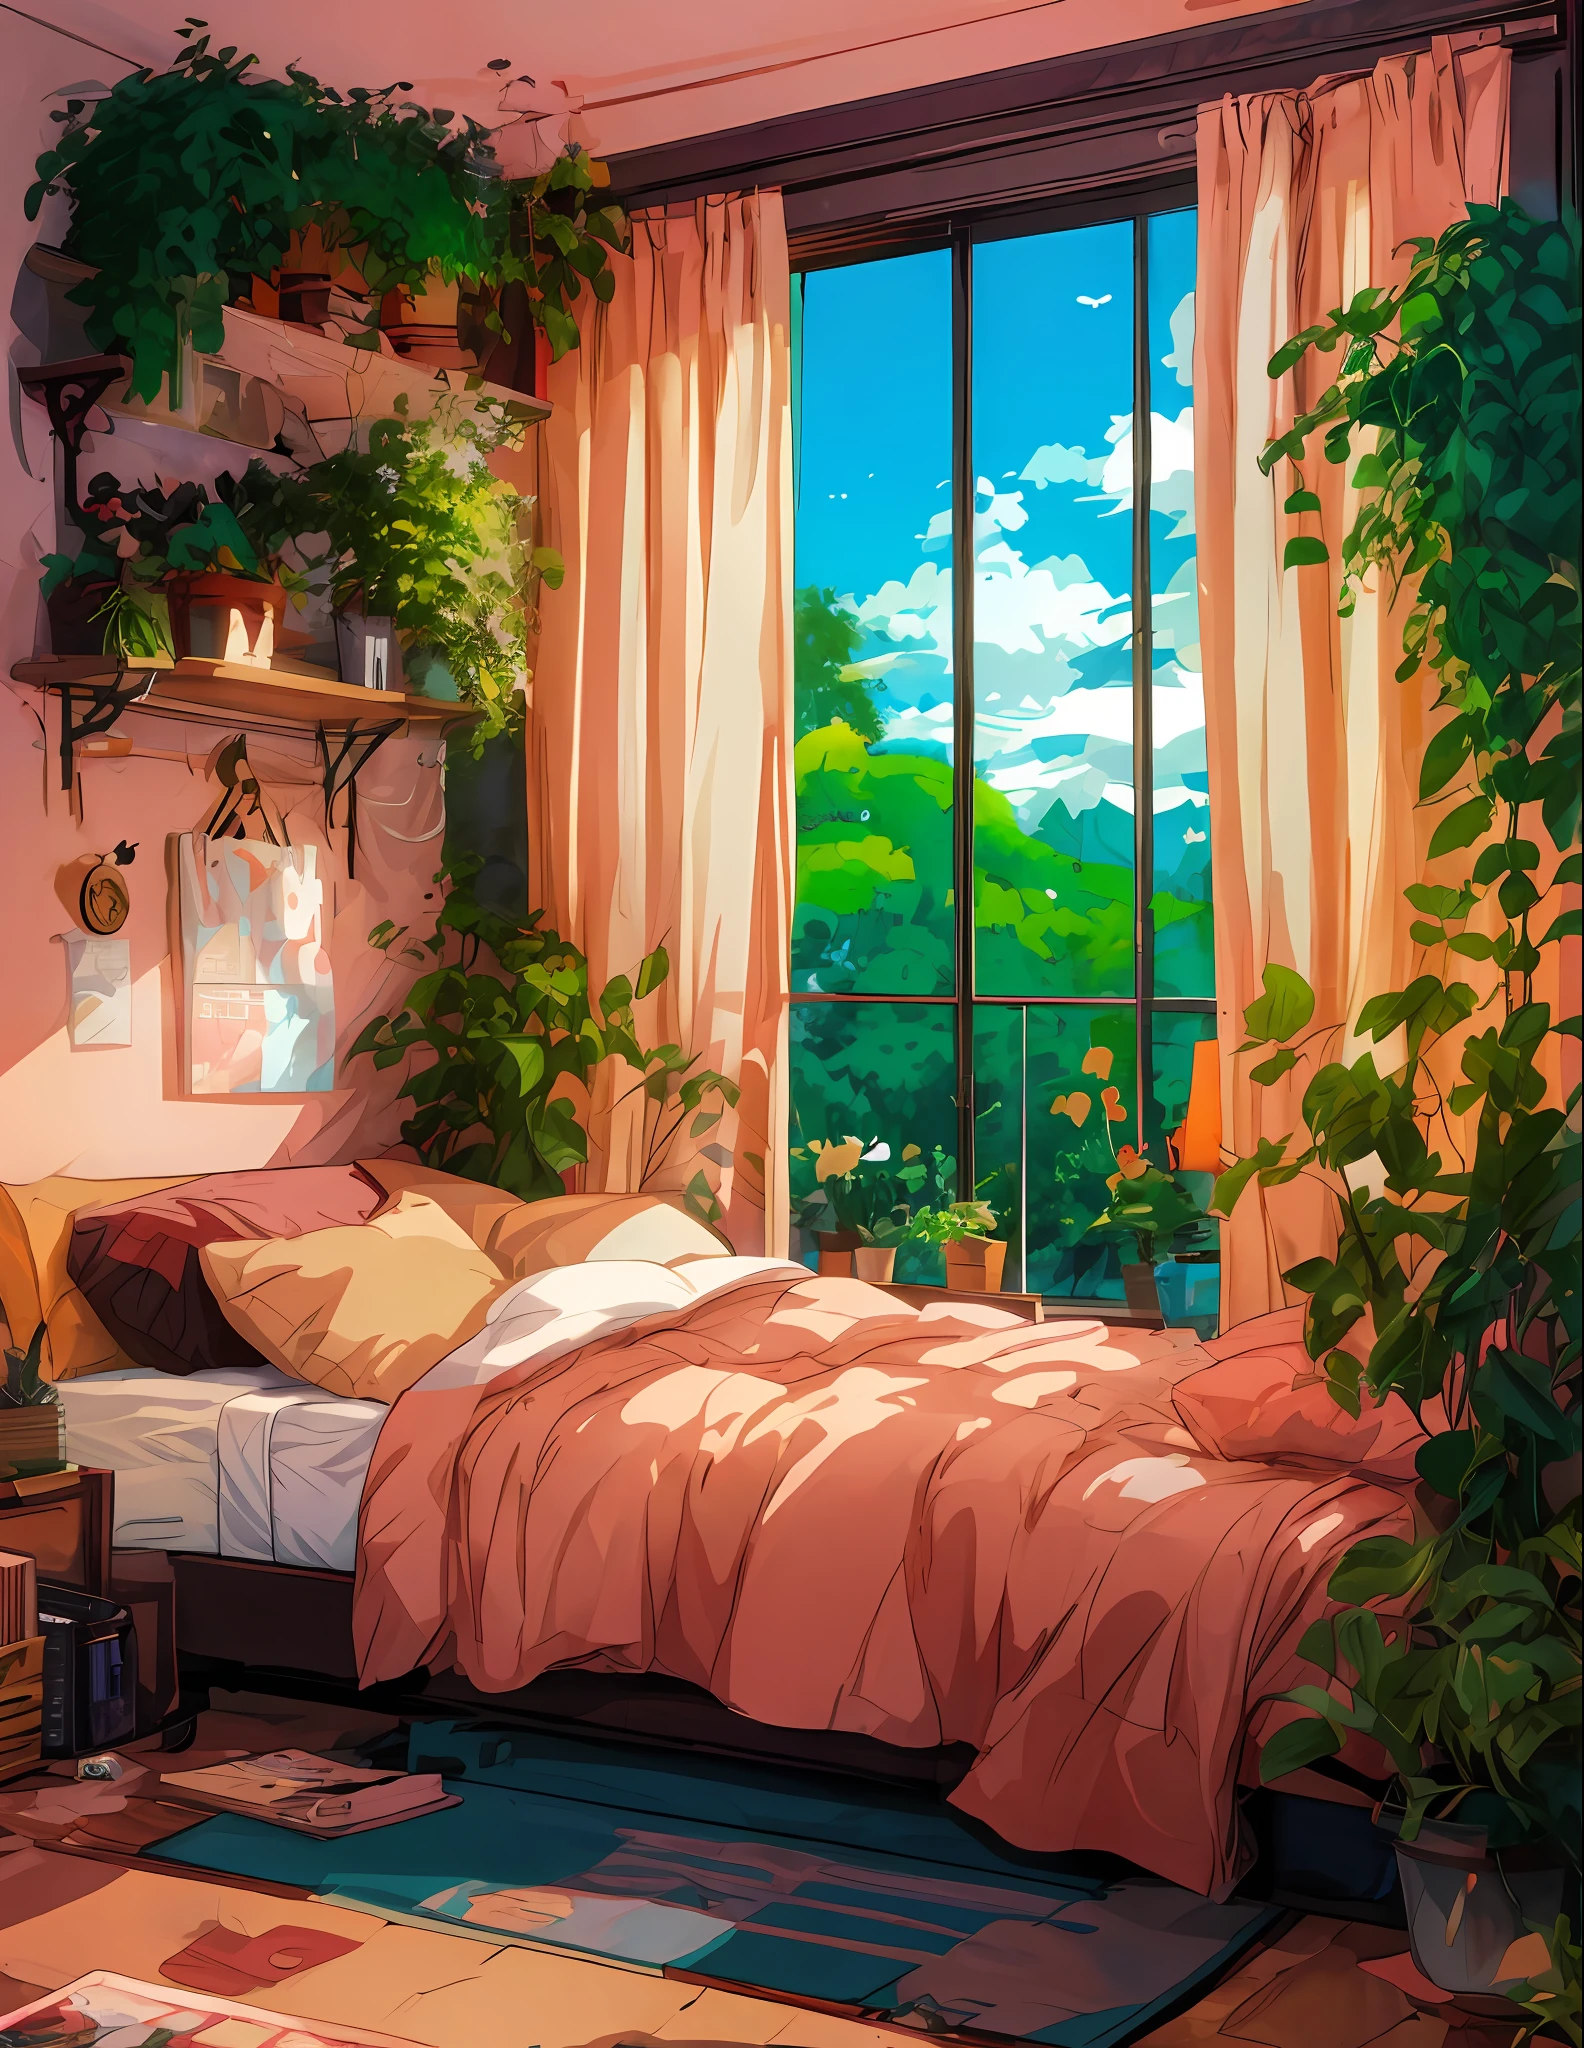 有一張鋪著粉紅色被子的床和一扇可以看到風景的窗戶, 动漫美学, 洛菲藝術style, 动漫氛围, 陽光明媚的臥室, 舒緩舒適的風景, 輕鬆的環境, 動漫背景藝術, 房間裡種滿了植物, 舒適的房間, 動漫風景, Lo-Fi插畫風格, 舒適的地方, 洛菲藝術, 轻松的氛围